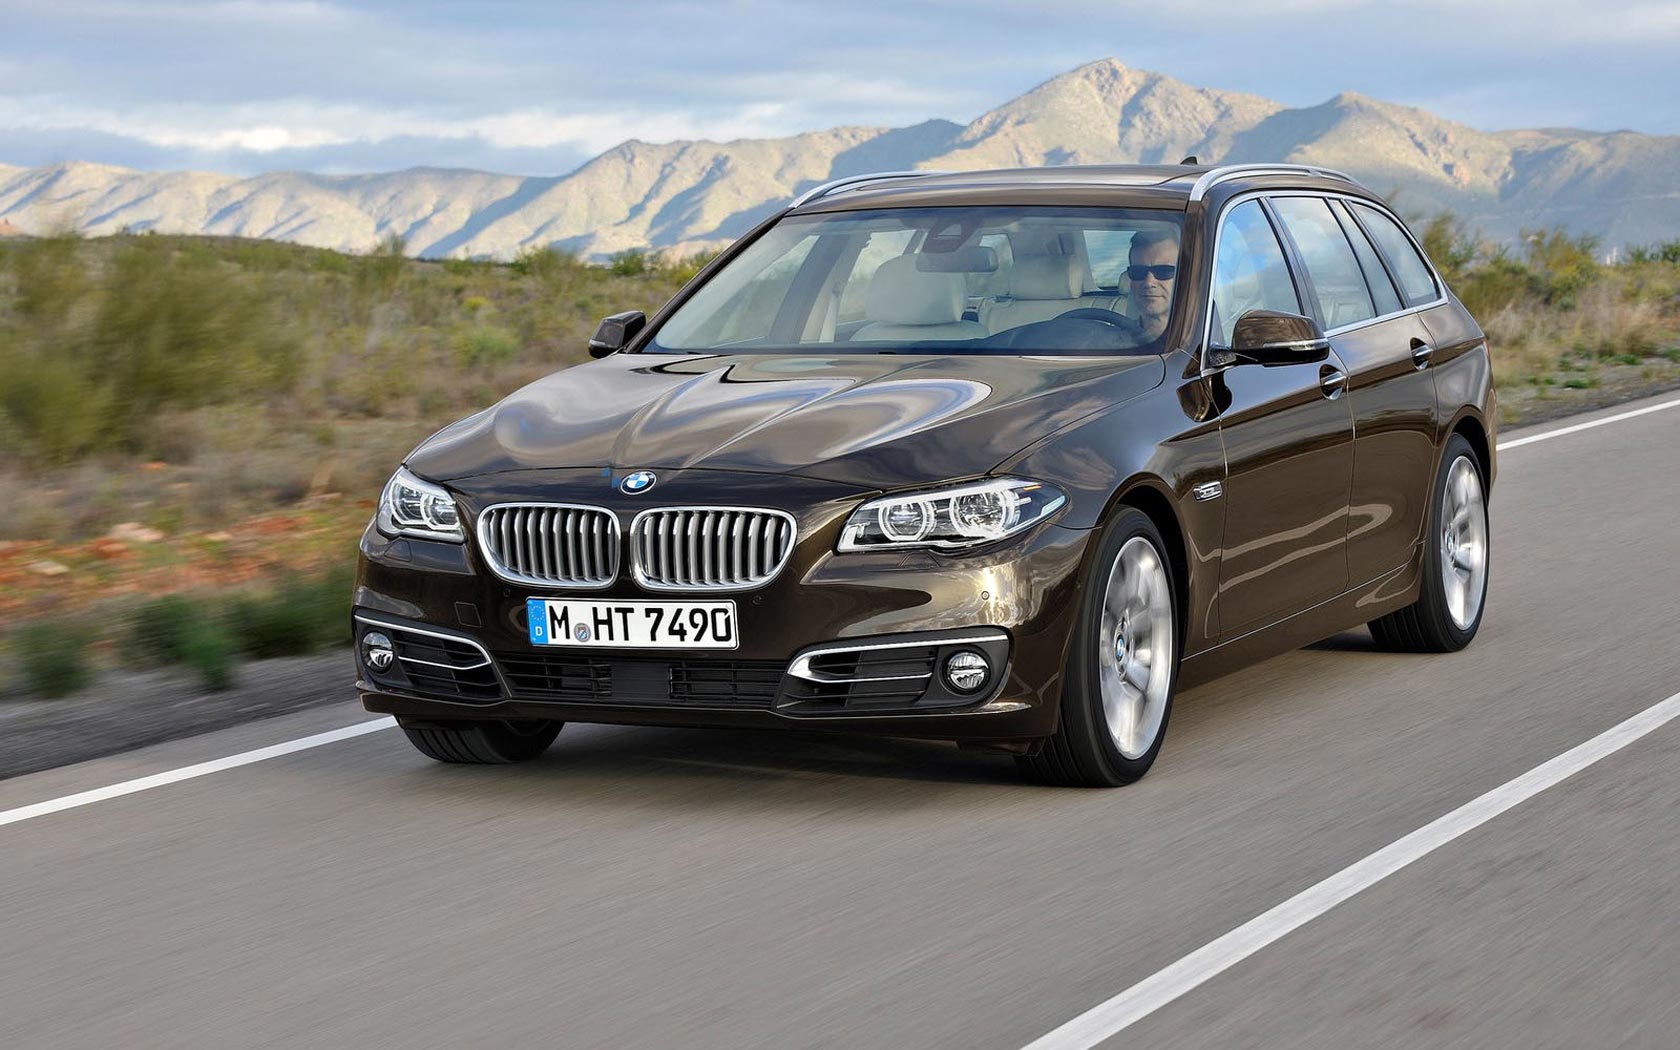  BMW 5-series Touring (2013-2016)